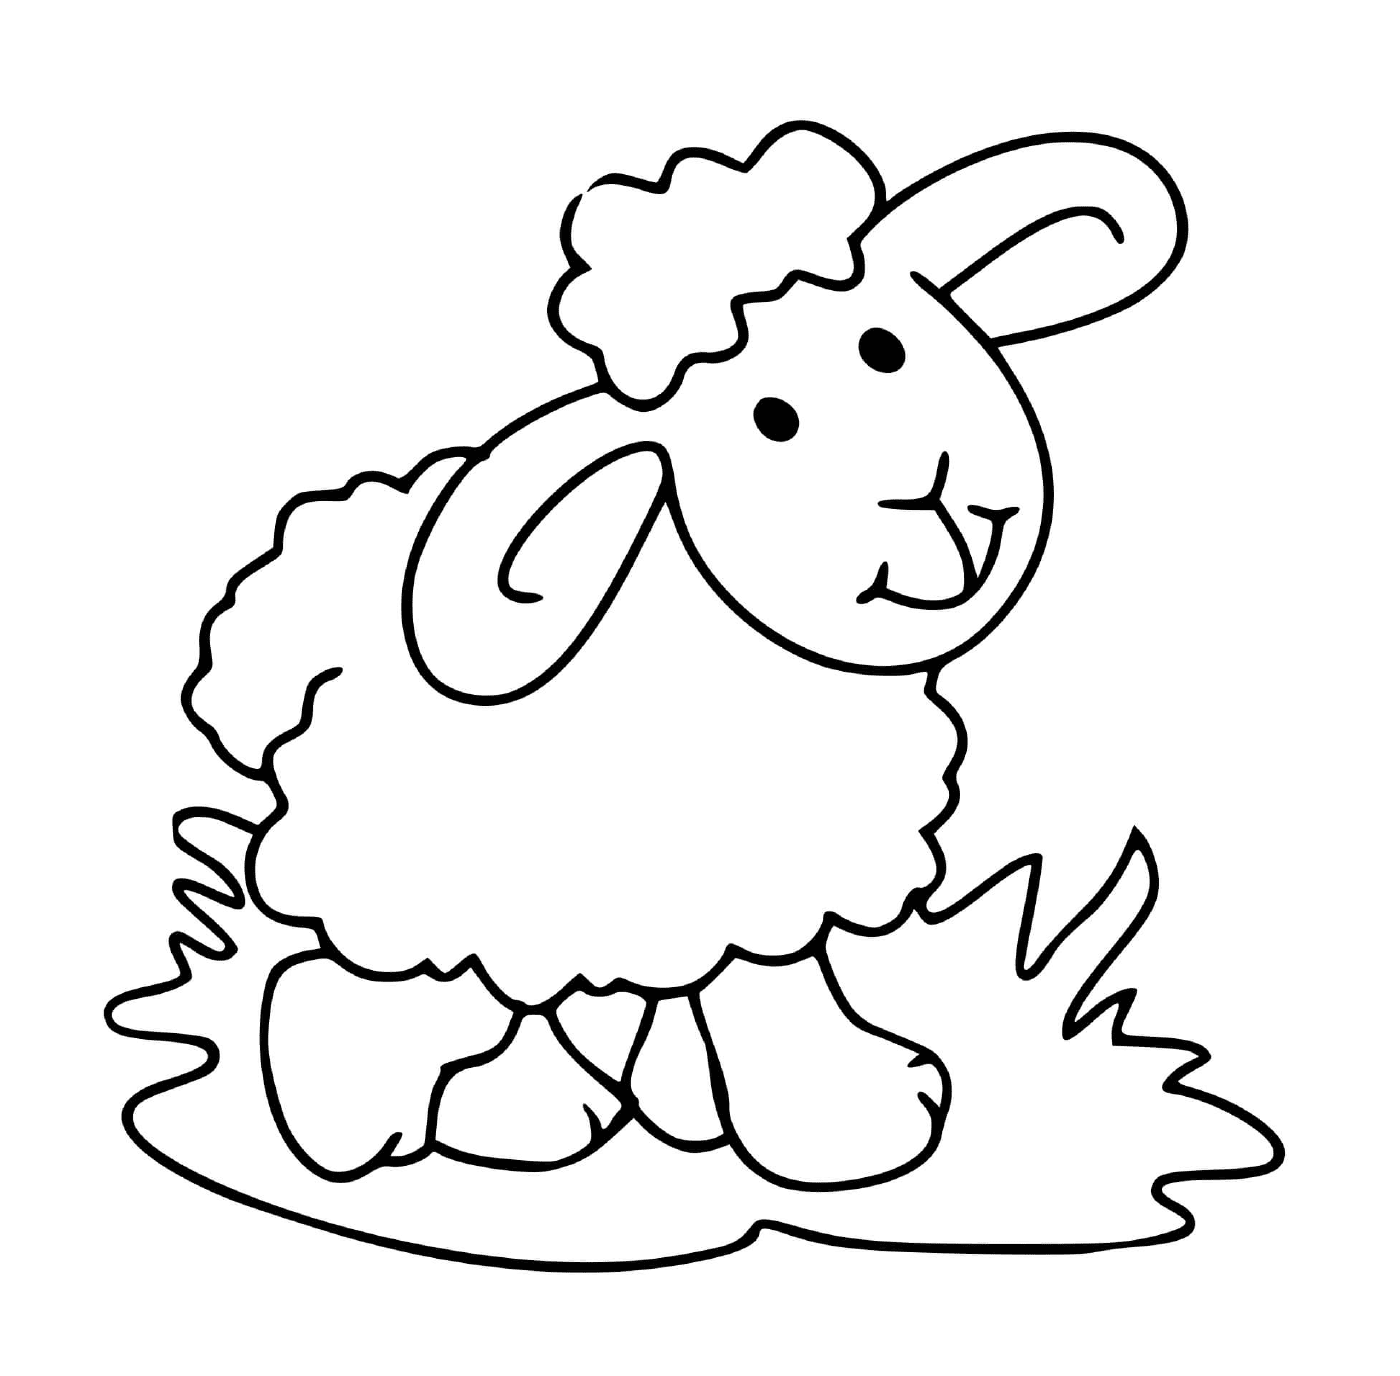  Mouton friedliches Gras zerrieben 